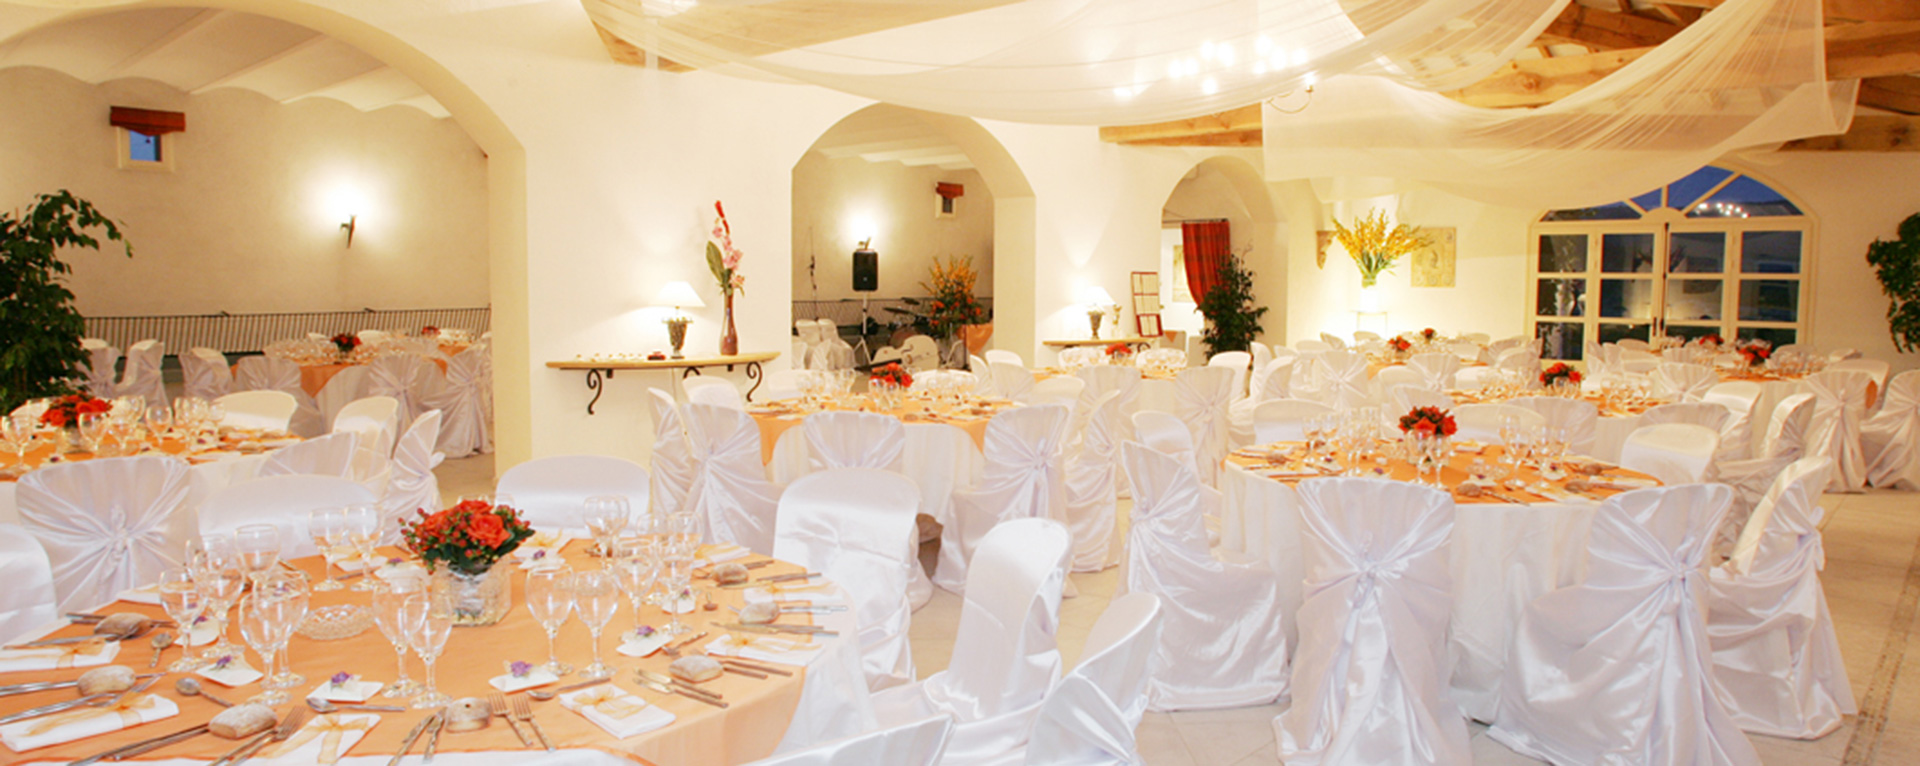 Salle de mariage de la Bergerie de la Vernède près de Narbonne